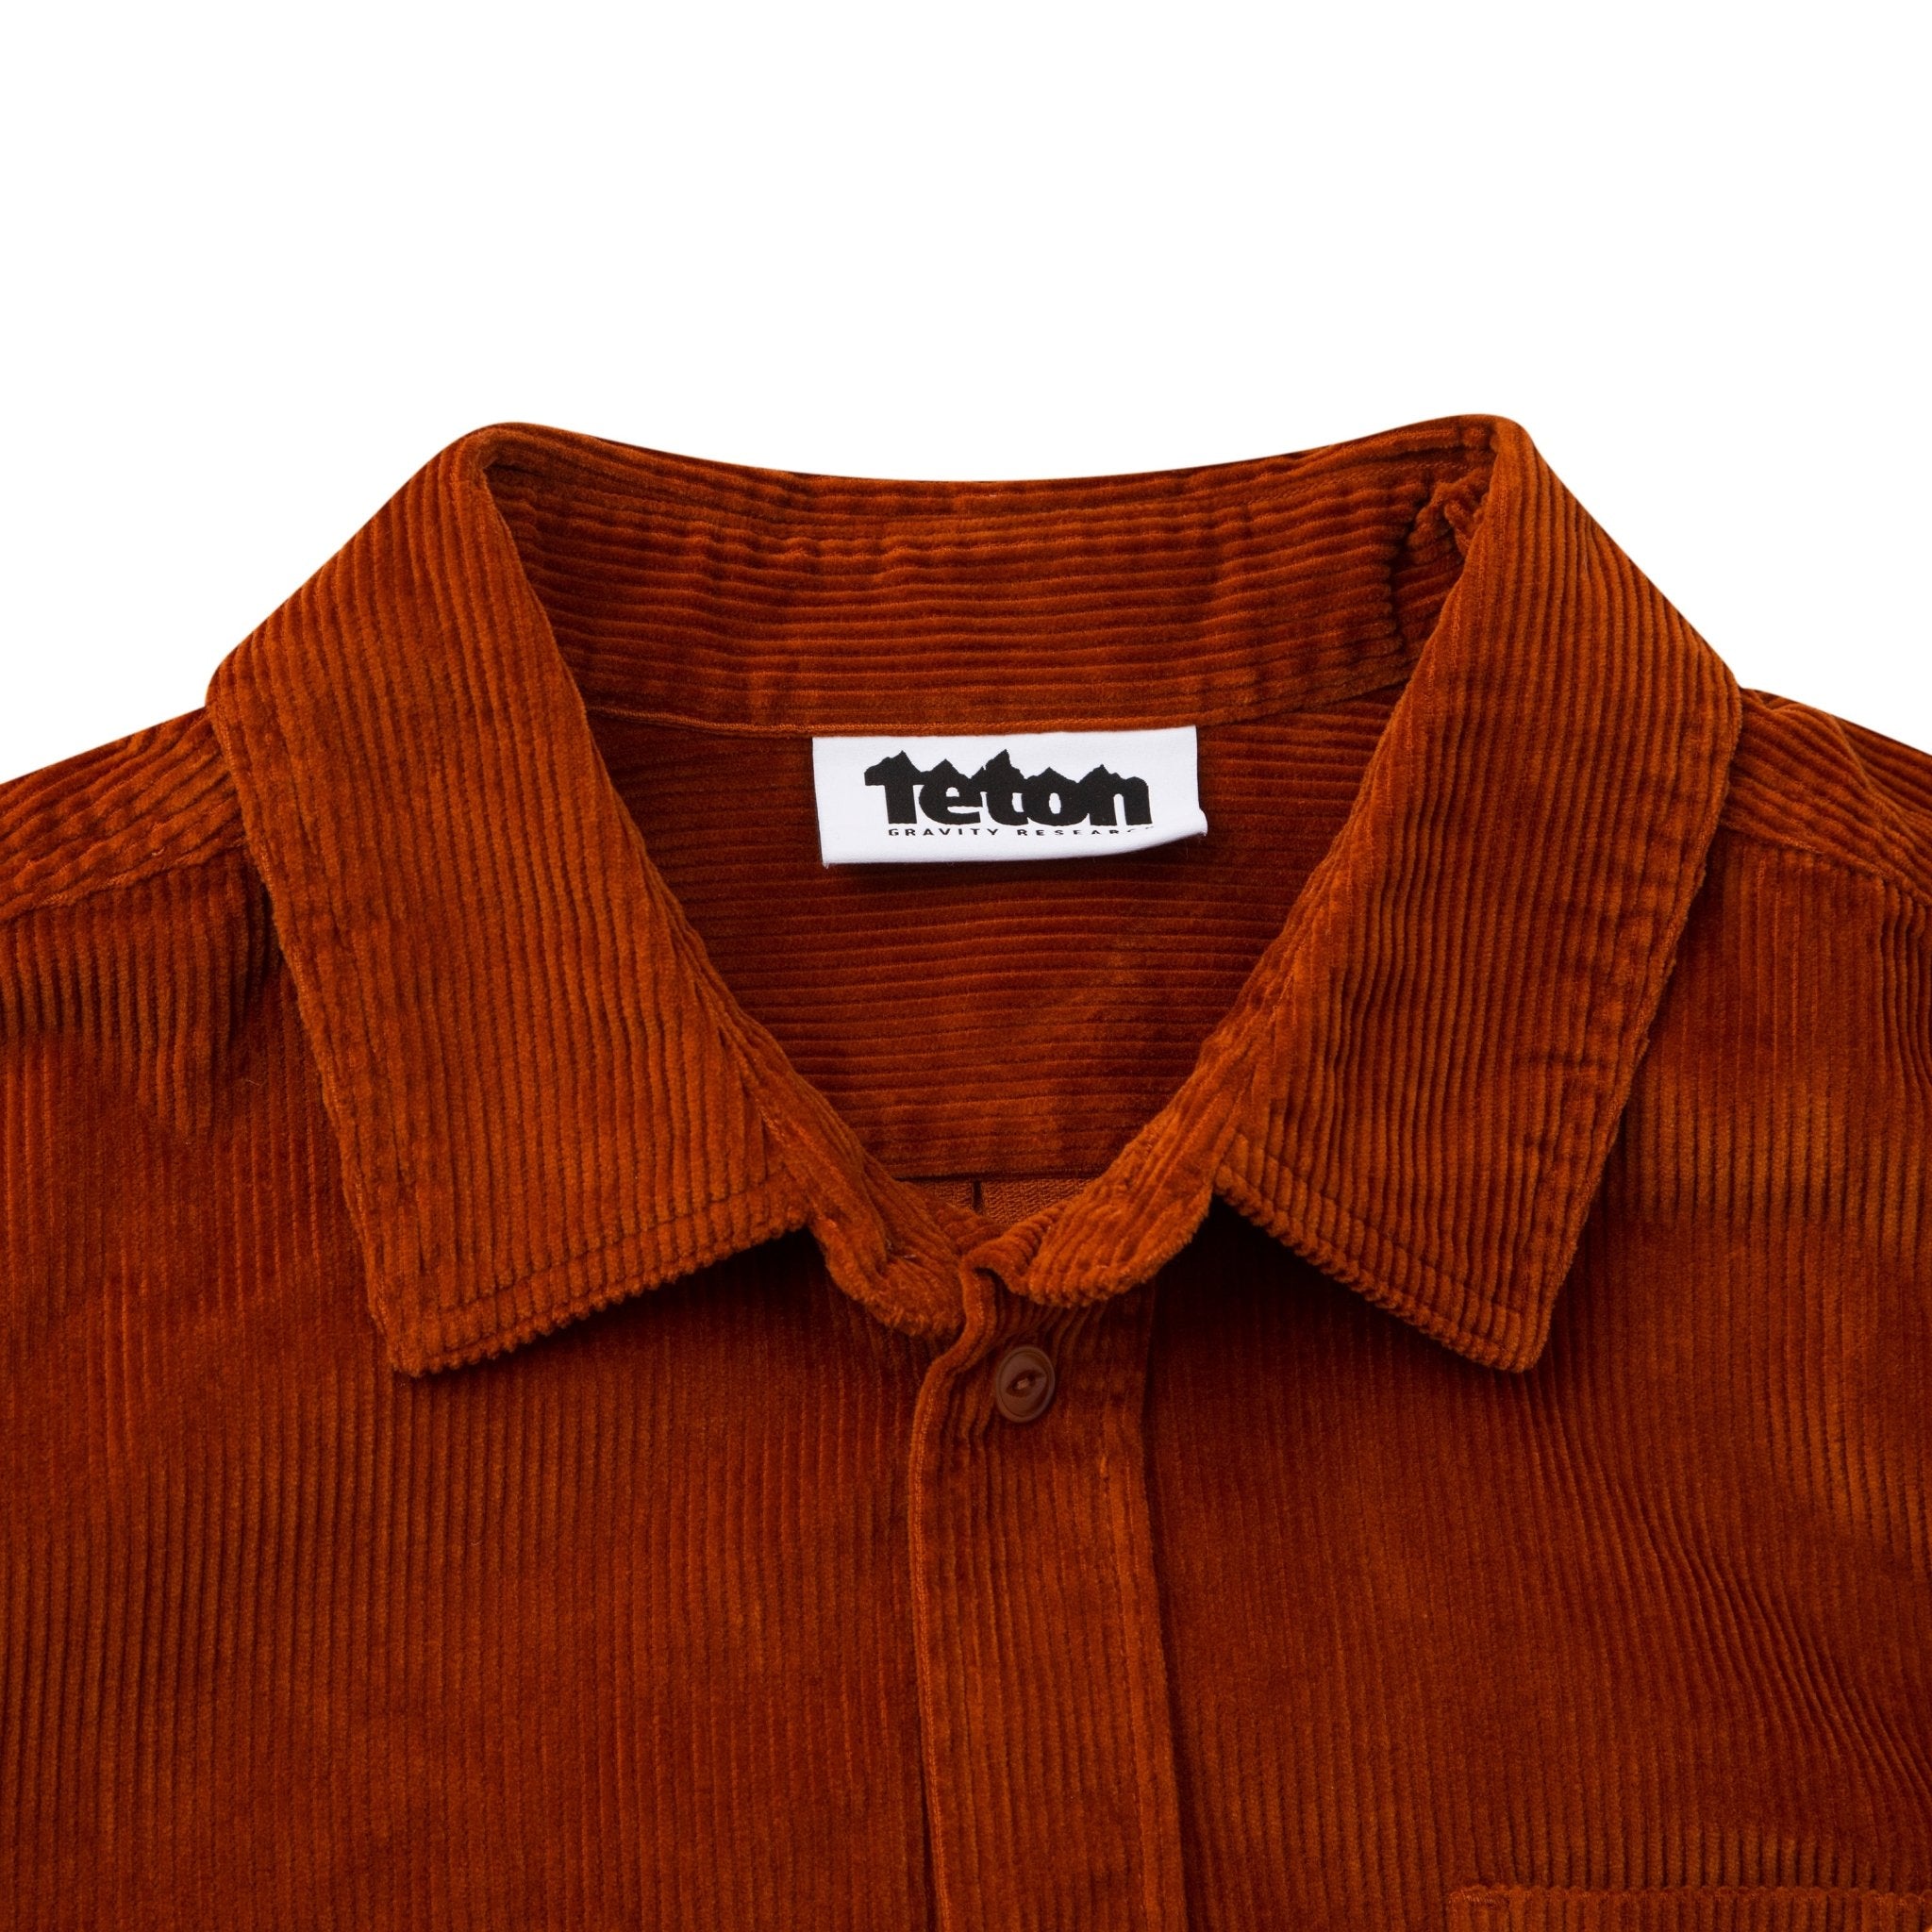 Men's Corduroy Work Shirt - Teton Gravity Research